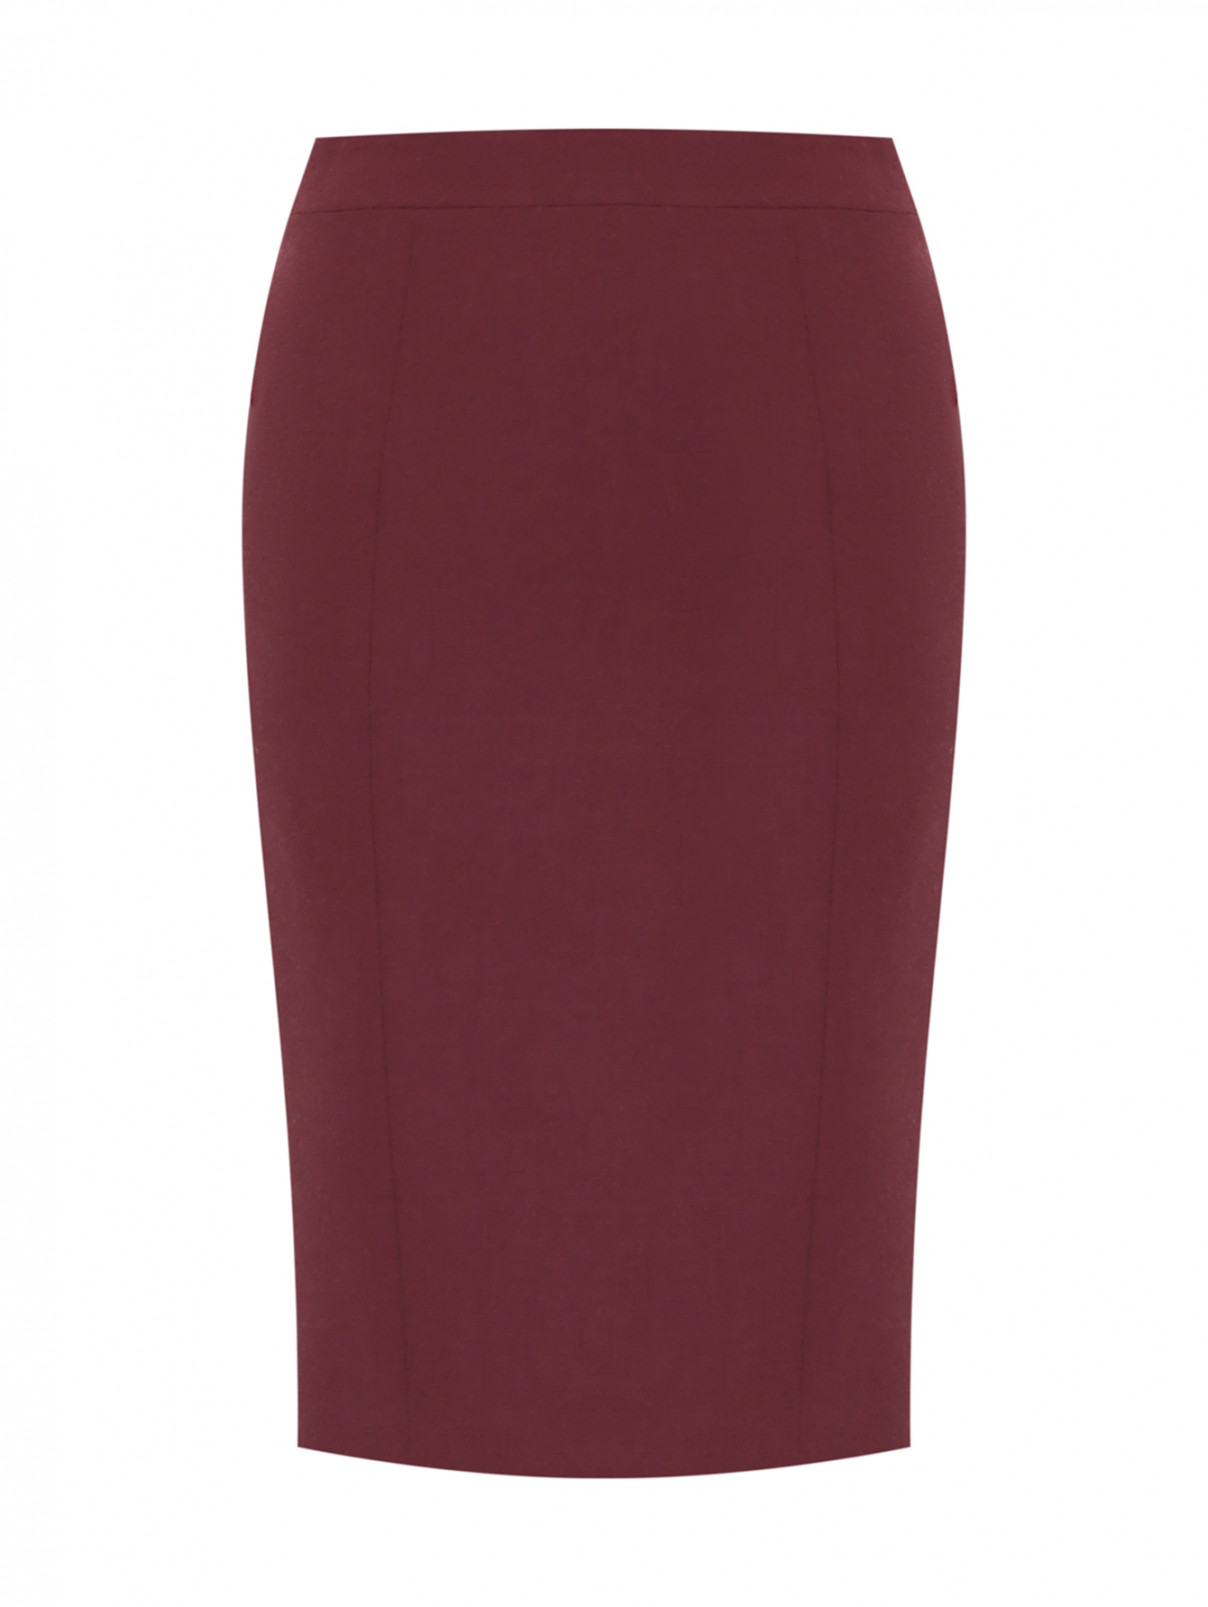 Однотонная юбка из шерсти Moschino  –  Общий вид  – Цвет:  Красный